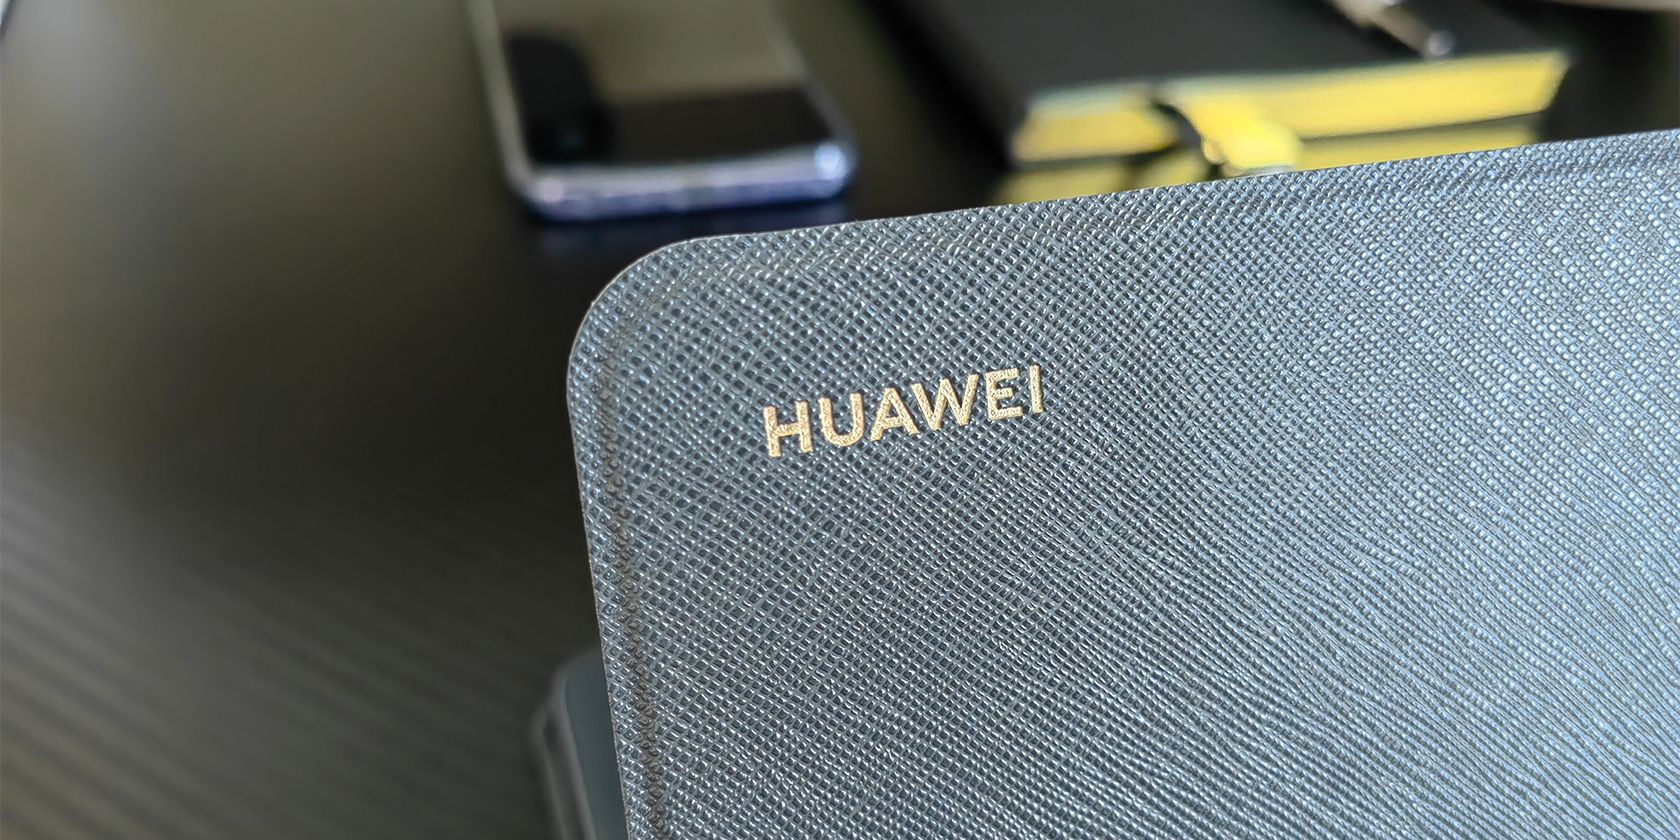 Huawei matepad 11 case logo